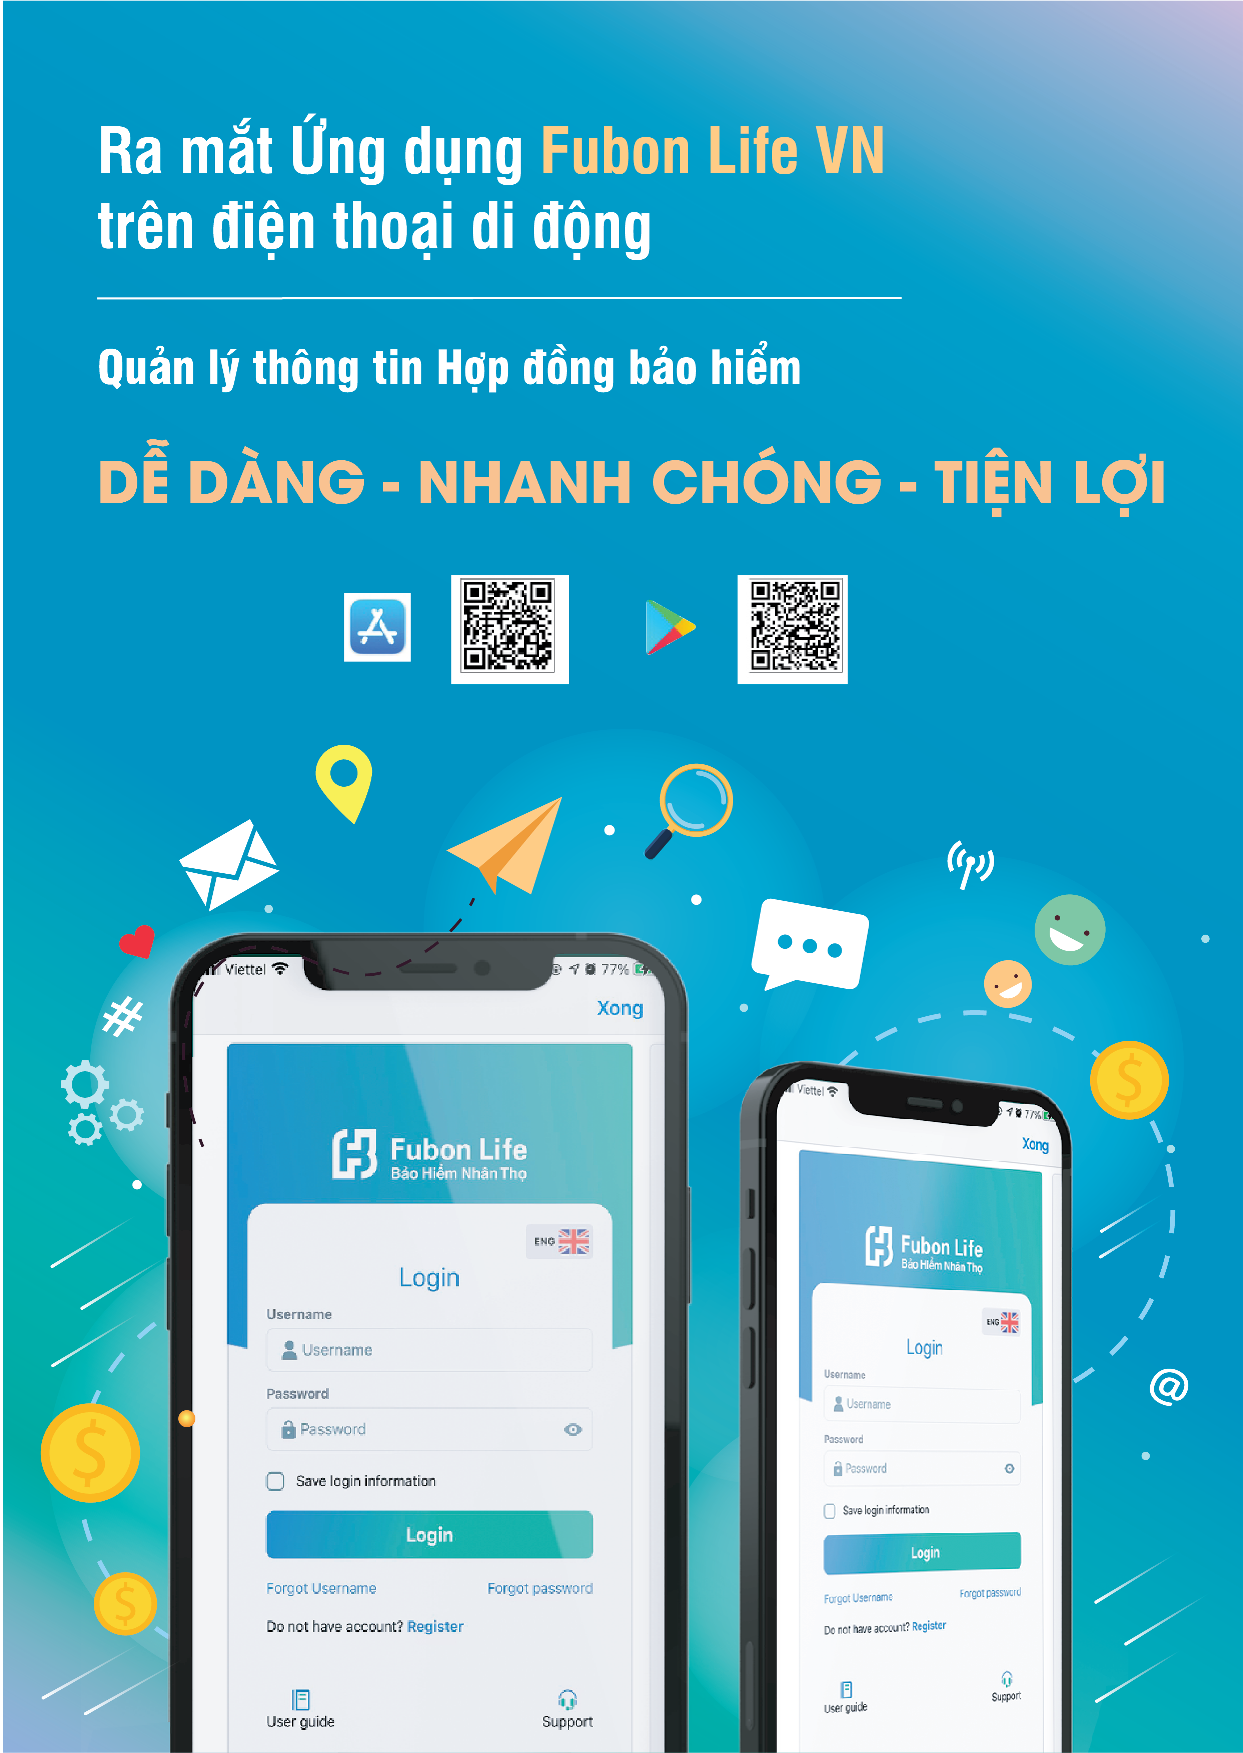 Fubon Life Việt Nam ra mắt ứng dụng quản lý hợp đồng bảo hiểm trên điện thoại di động